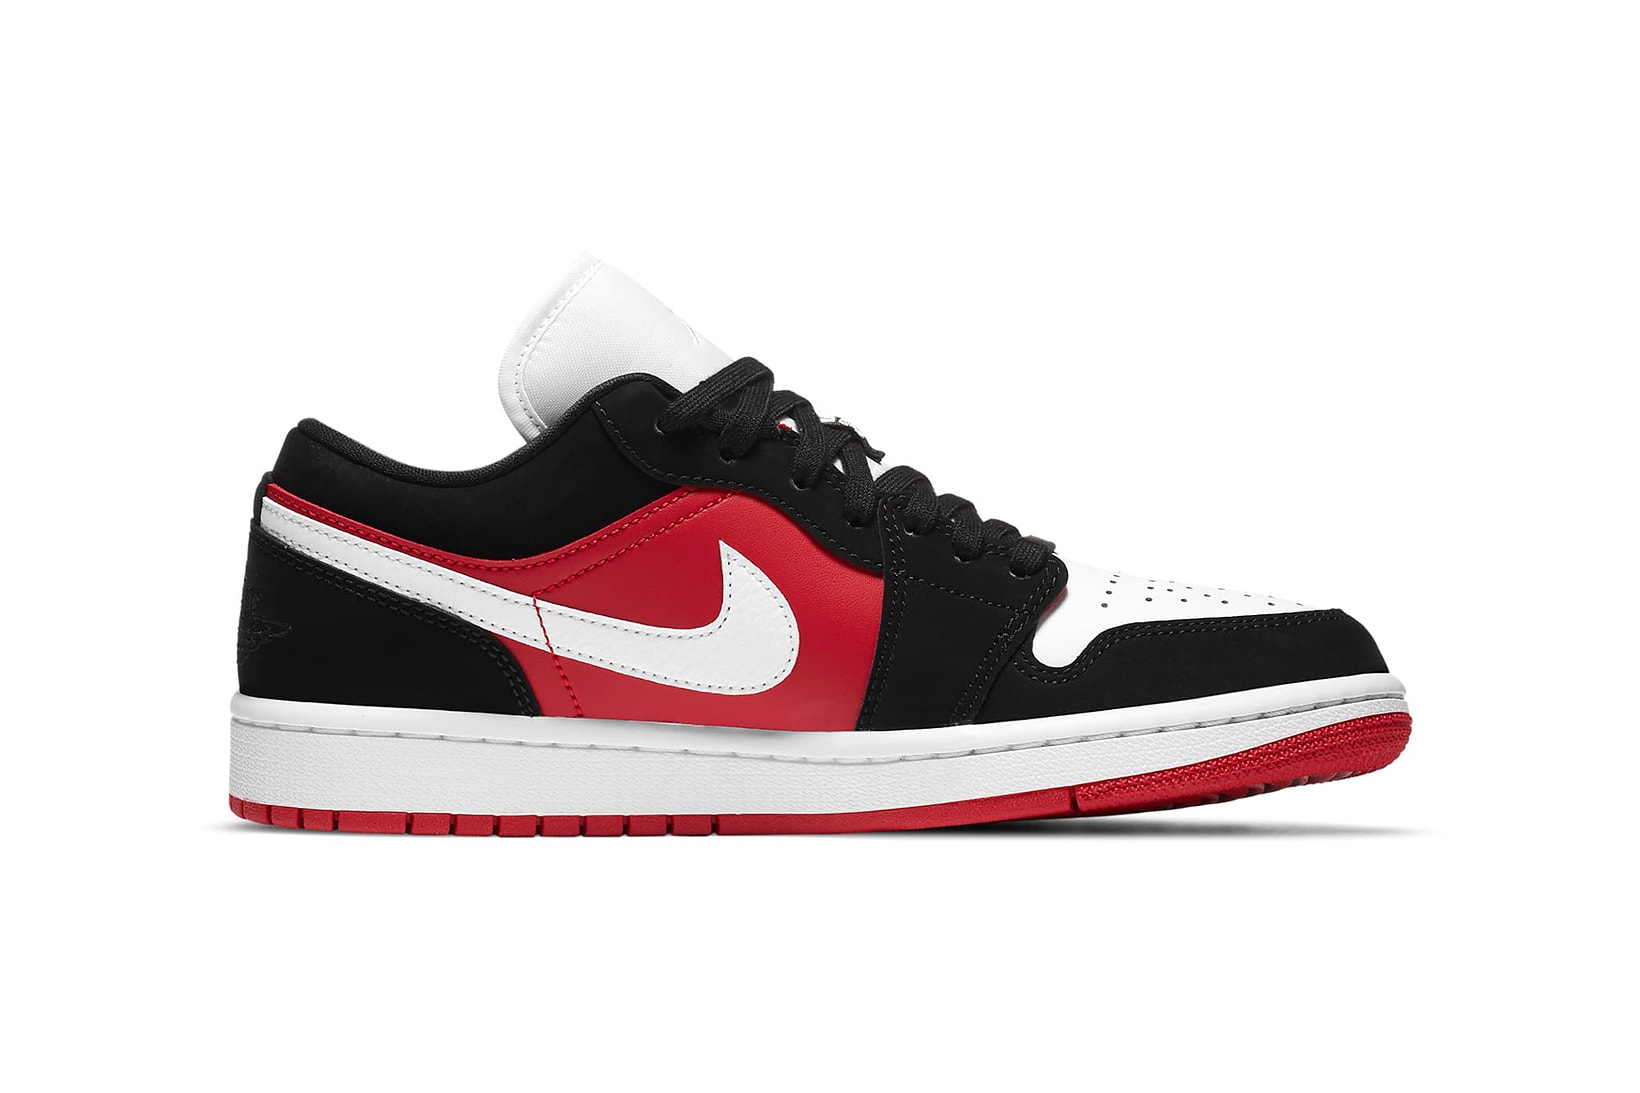 nike air jordan 1 low womens sneakers red black white colorway shoes footwear sneakerhead